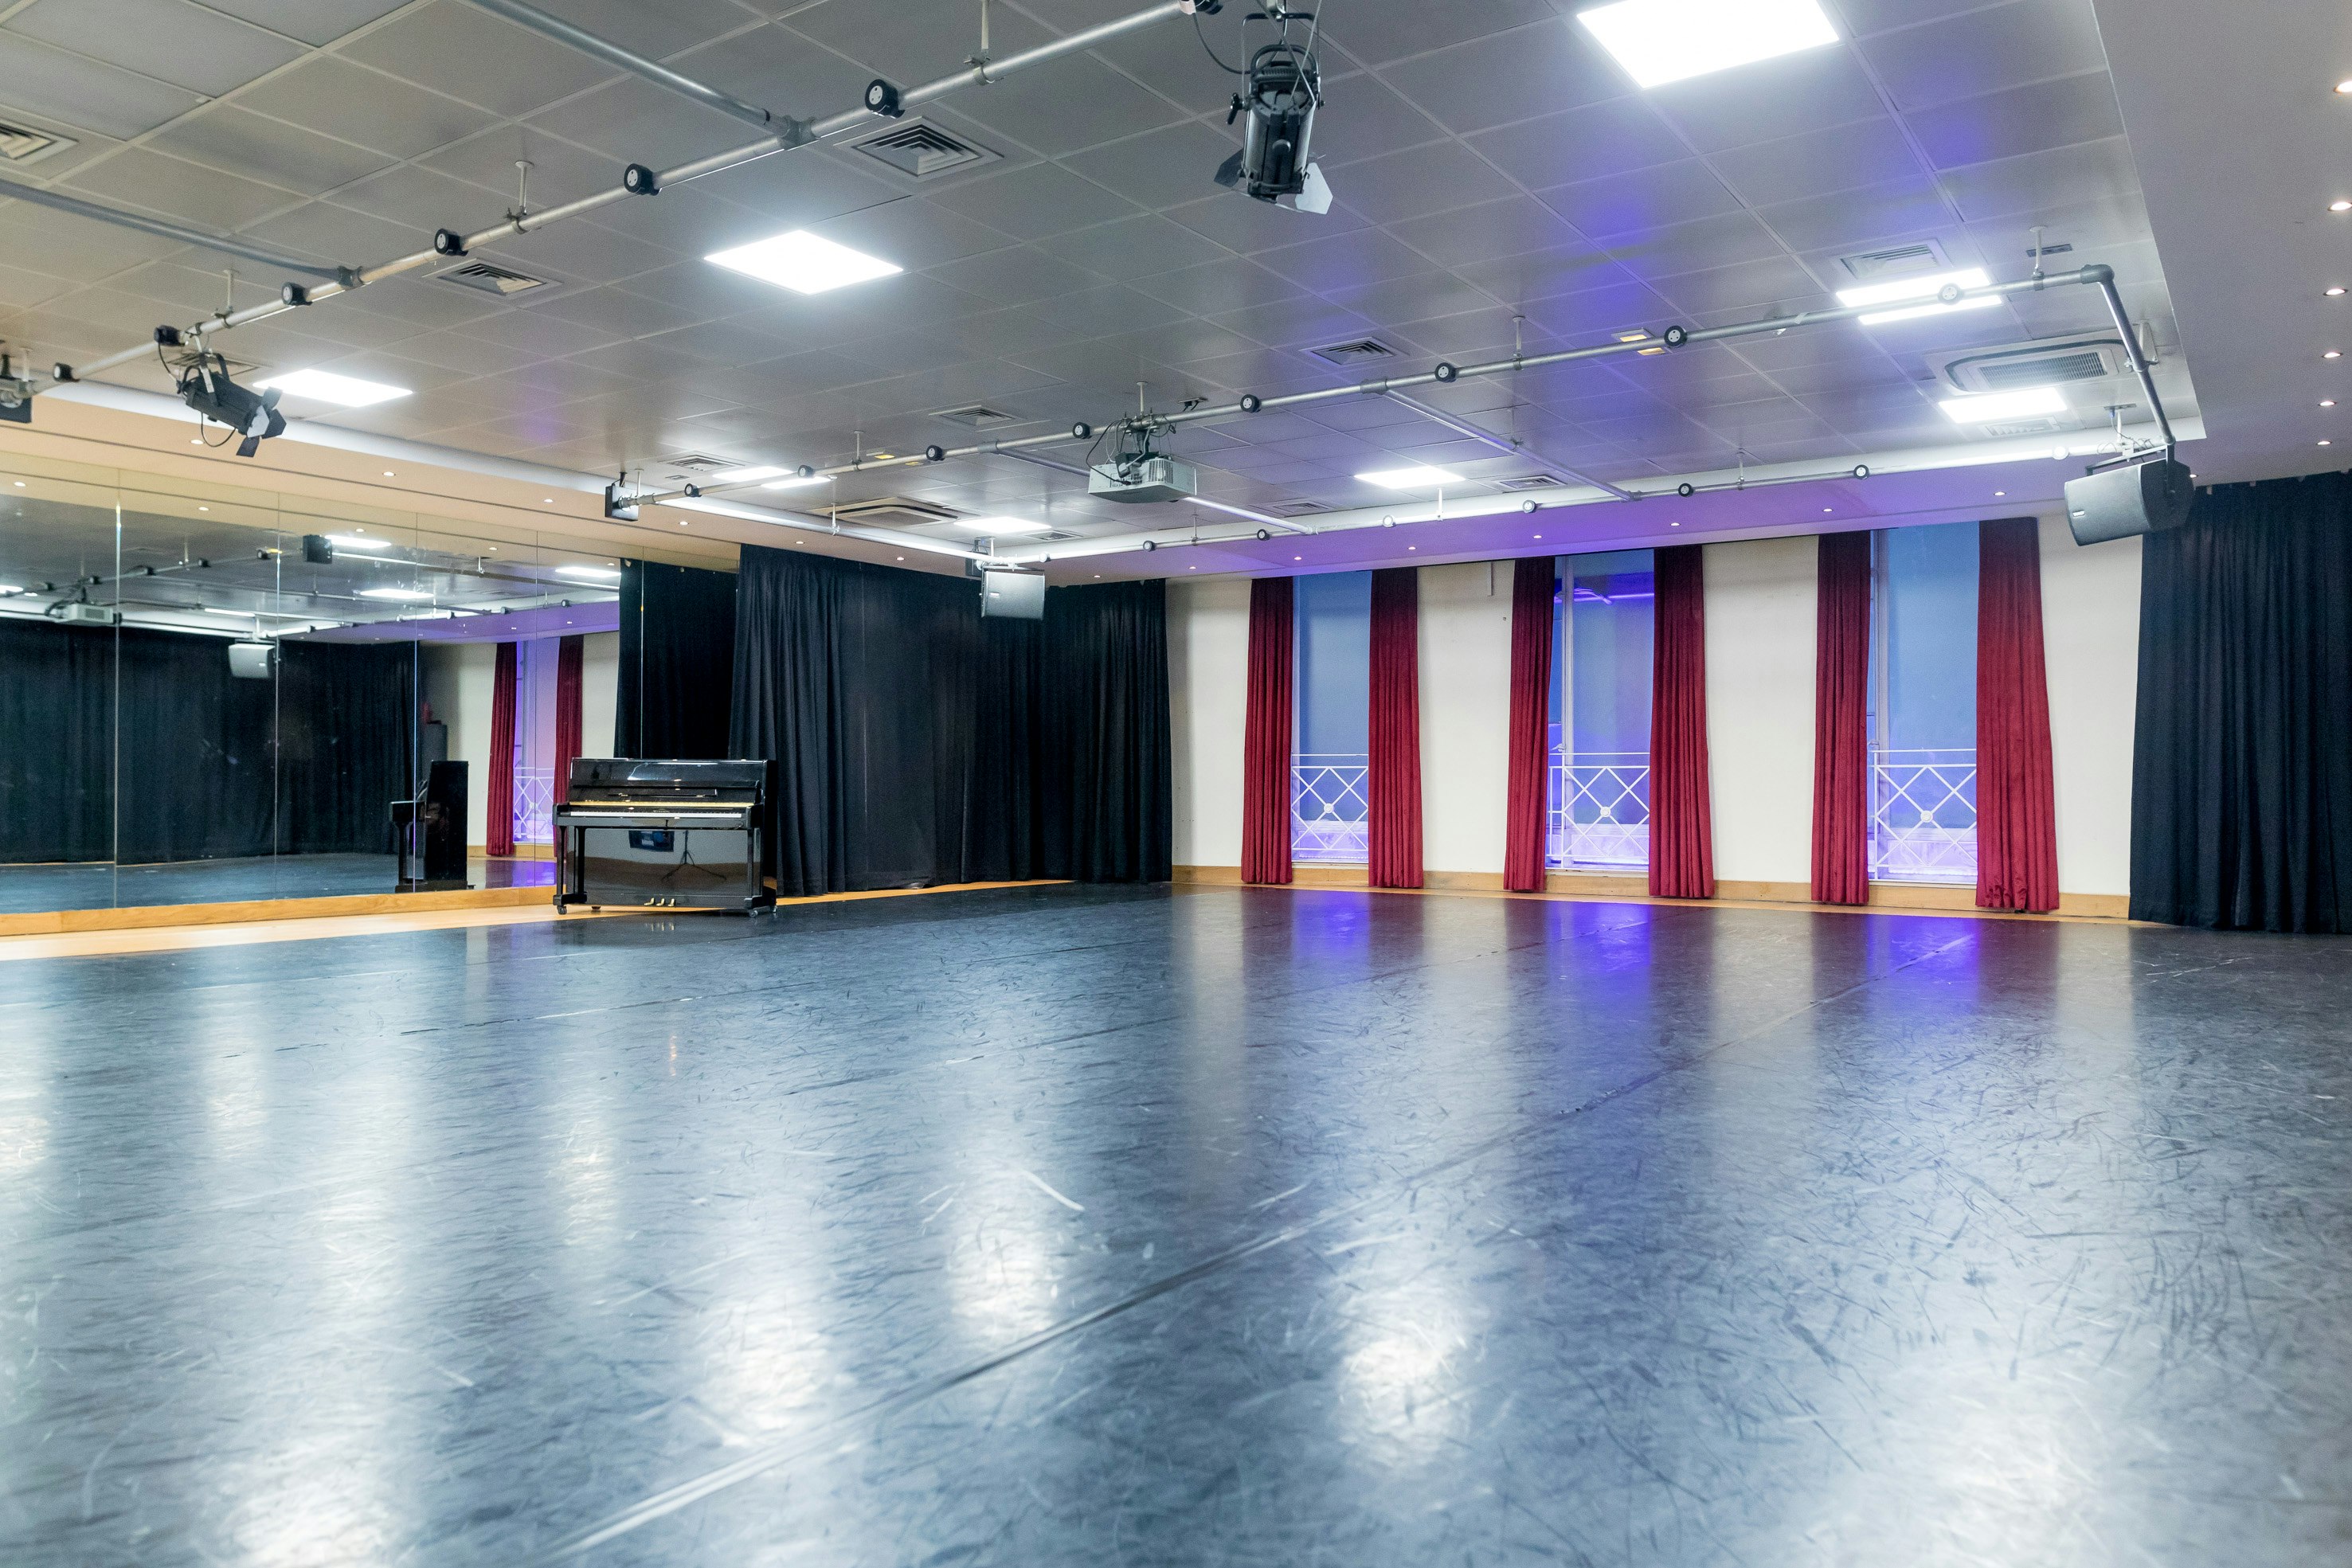 Dance Studio Venues in London - Dominion Theatre 